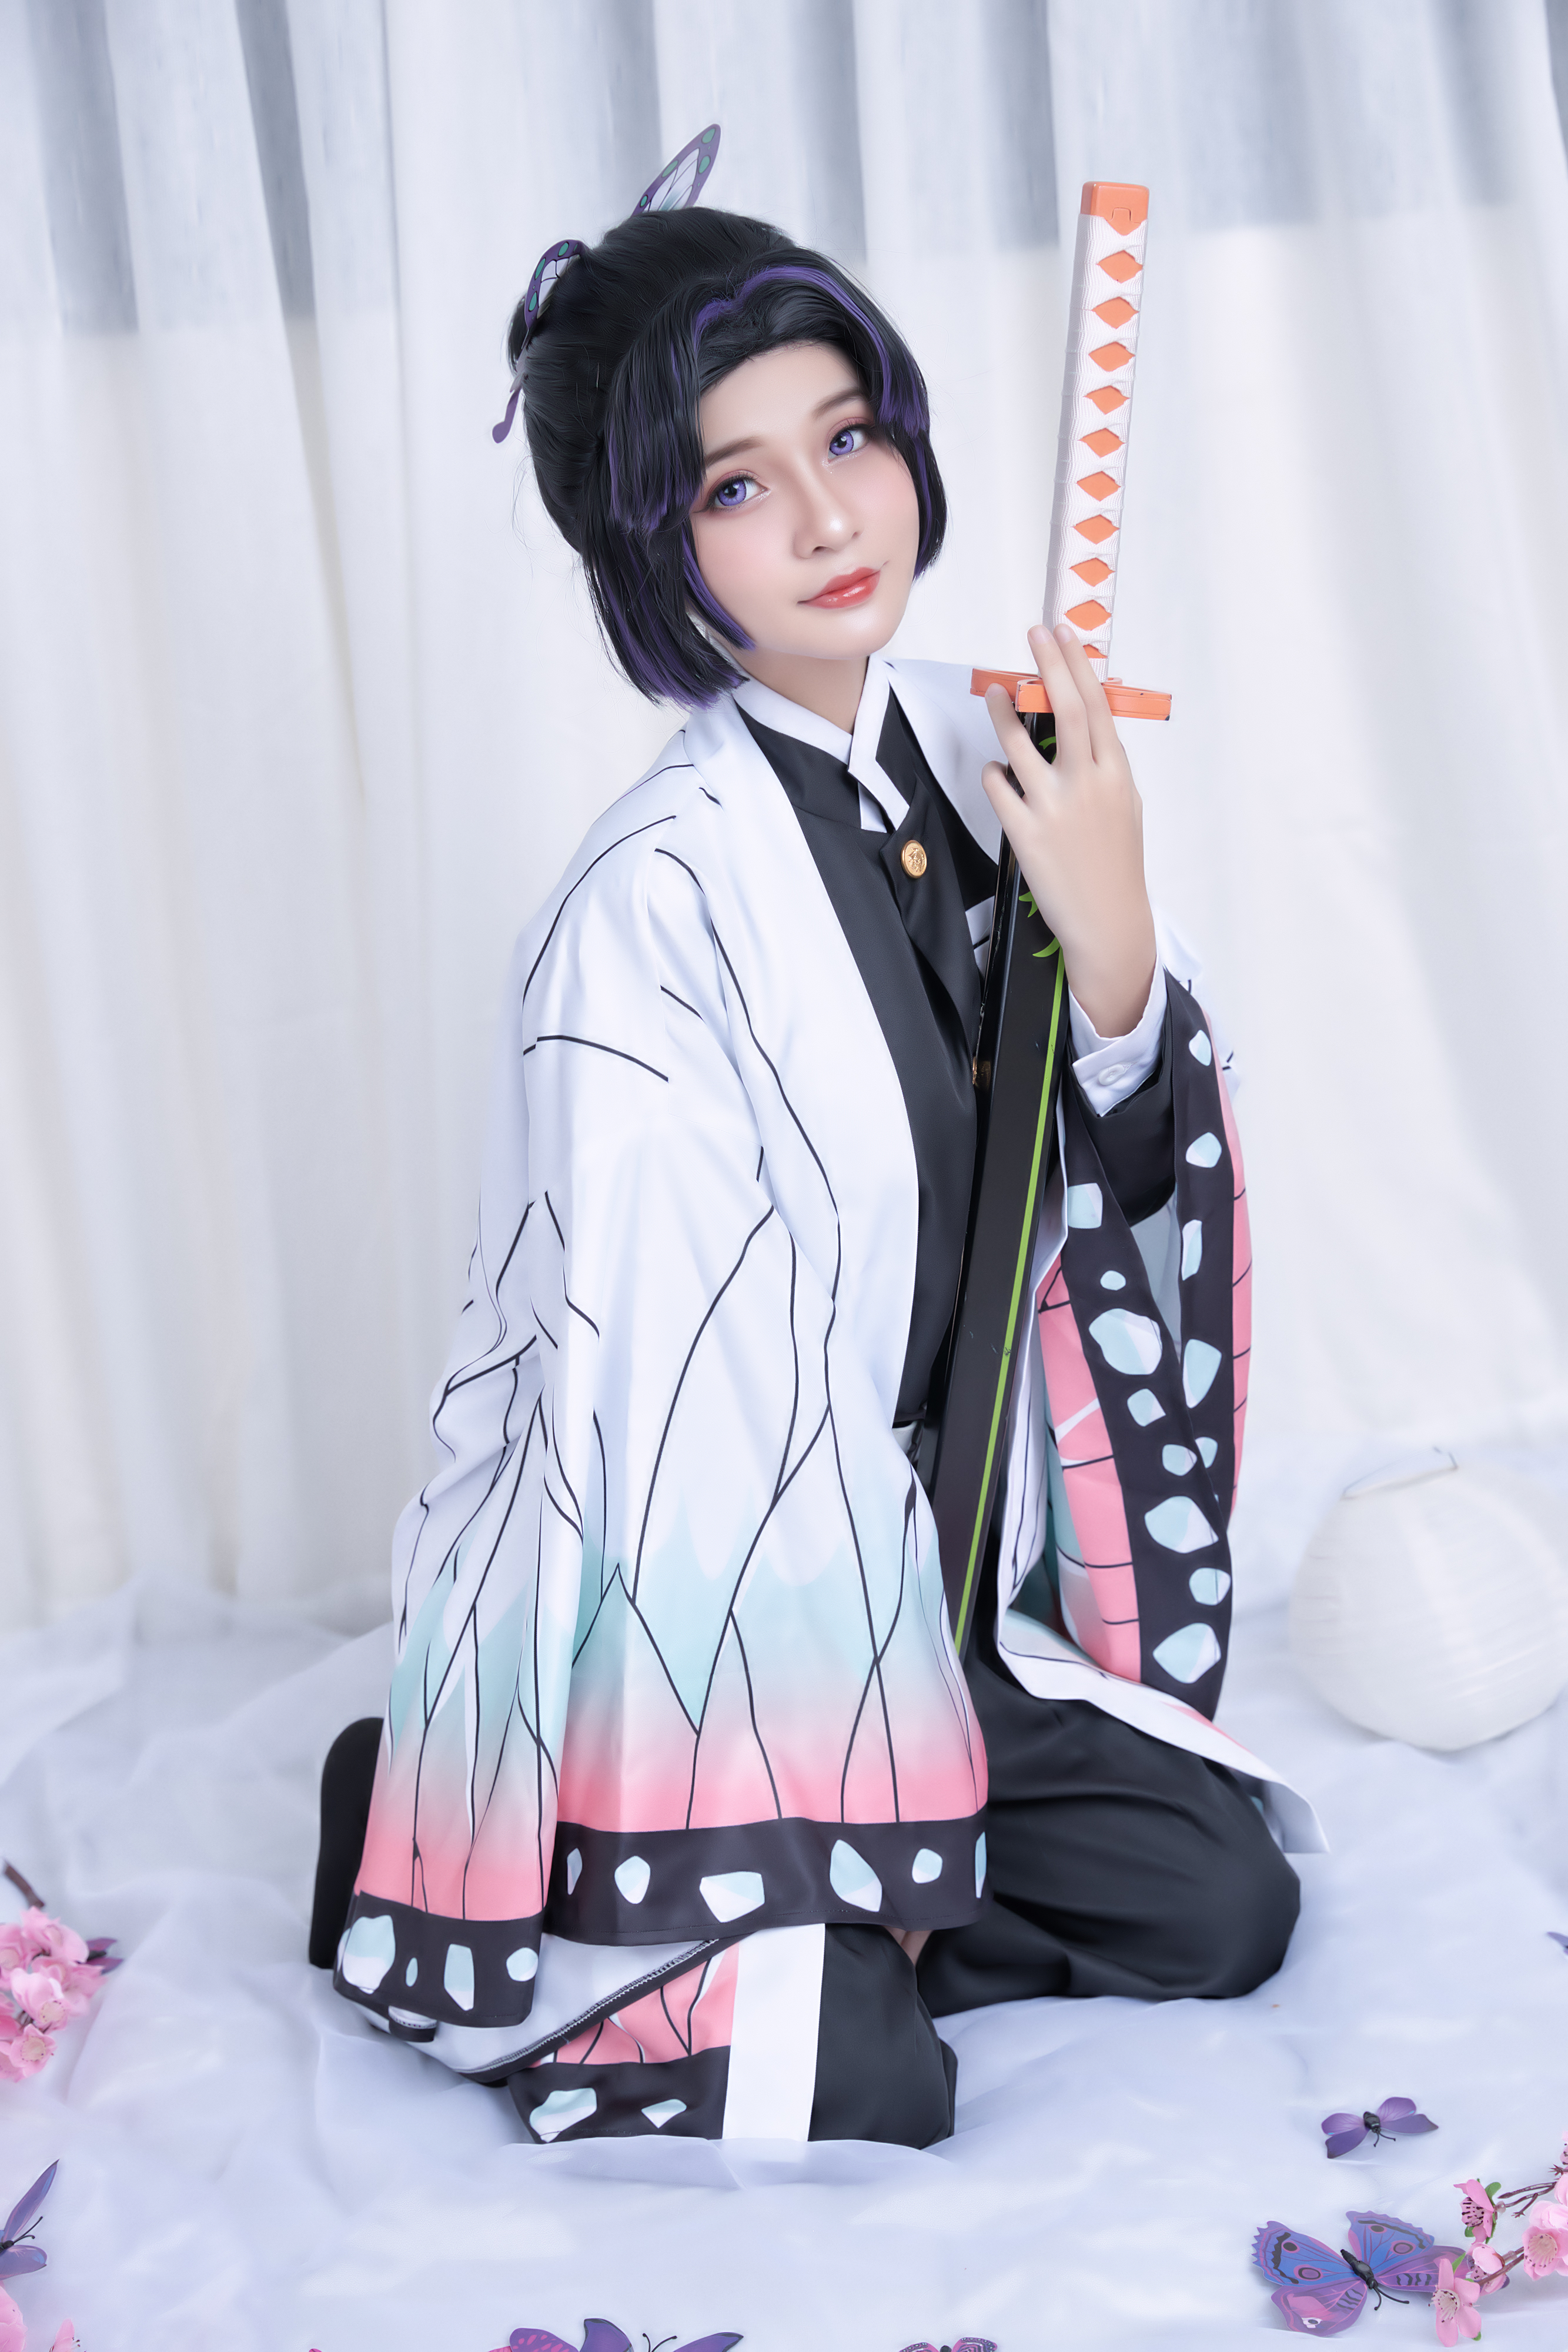 Kochou Shinobu Cosplay Women With Swords Butterfly Asian Kimetsu No Yaiba 2667x4000